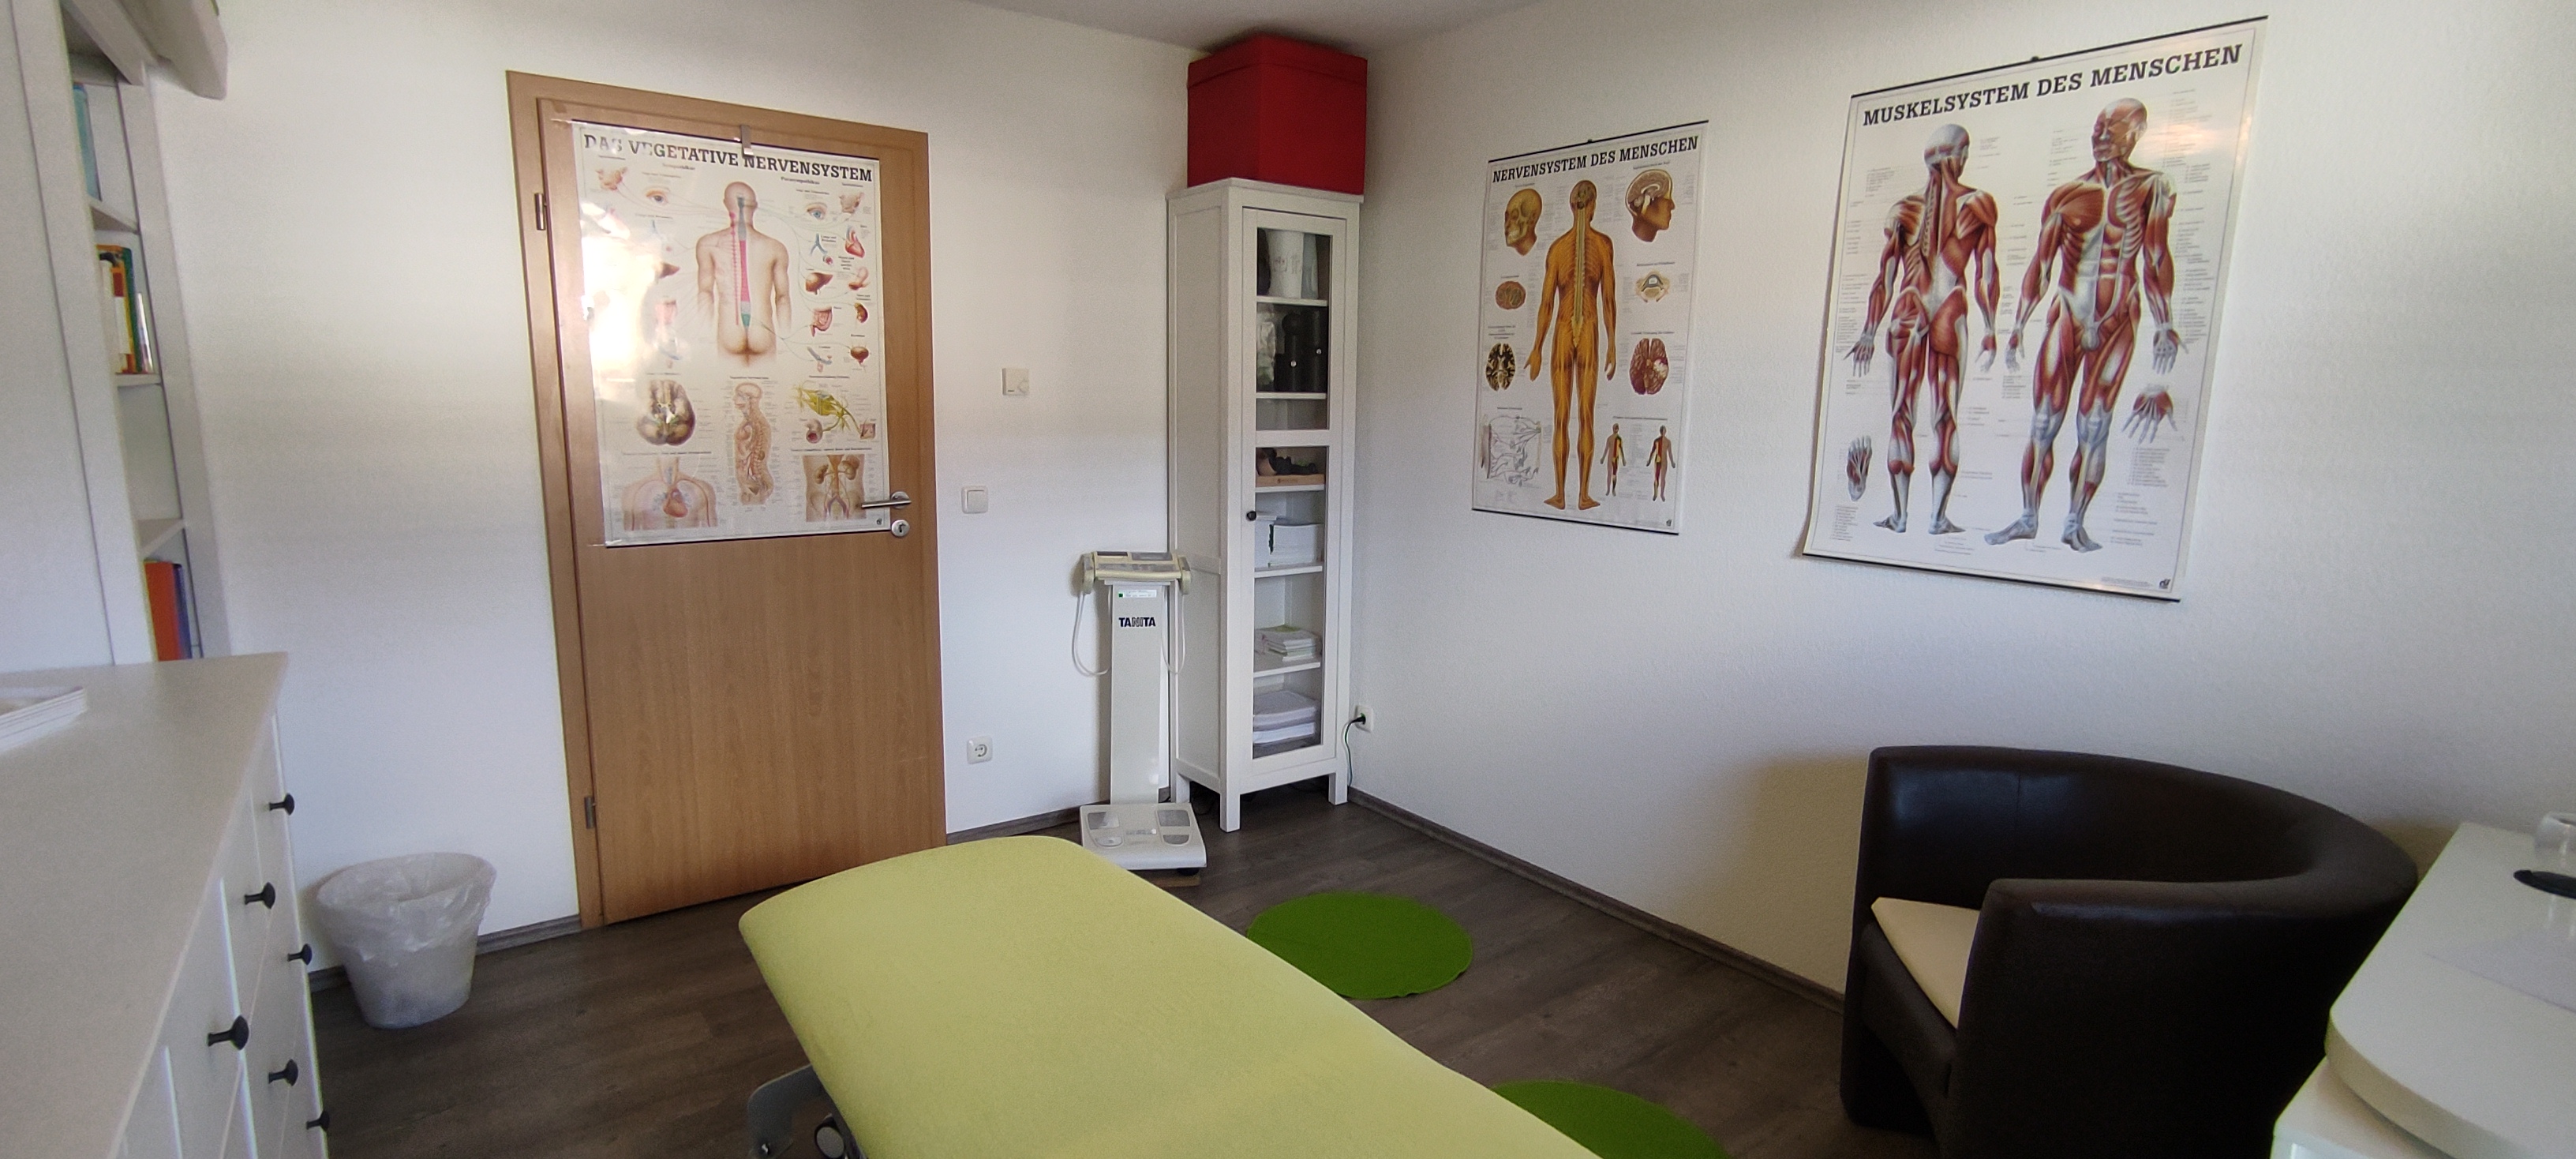 Hier sollten Sie ein Bild des Praxisraums sehen, in dem die Osteopathiebehandlung und andere manuelle Therapien stattfinden ...